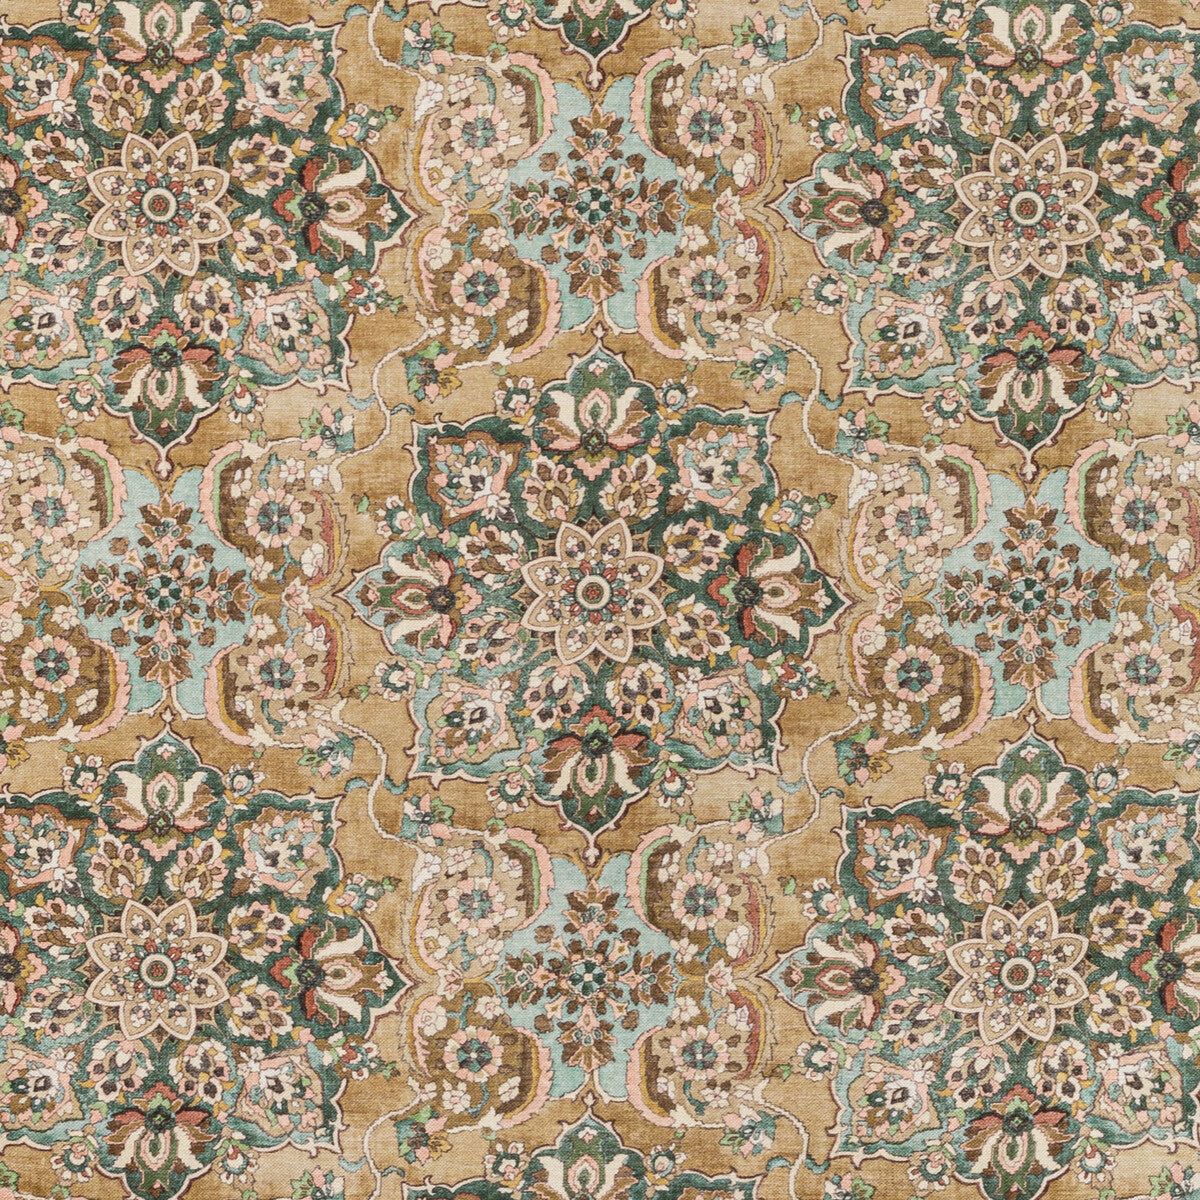 Granada Print fabric in bronze color - pattern 2020220.430.0 - by Lee Jofa in the Oscar De La Renta IV collection